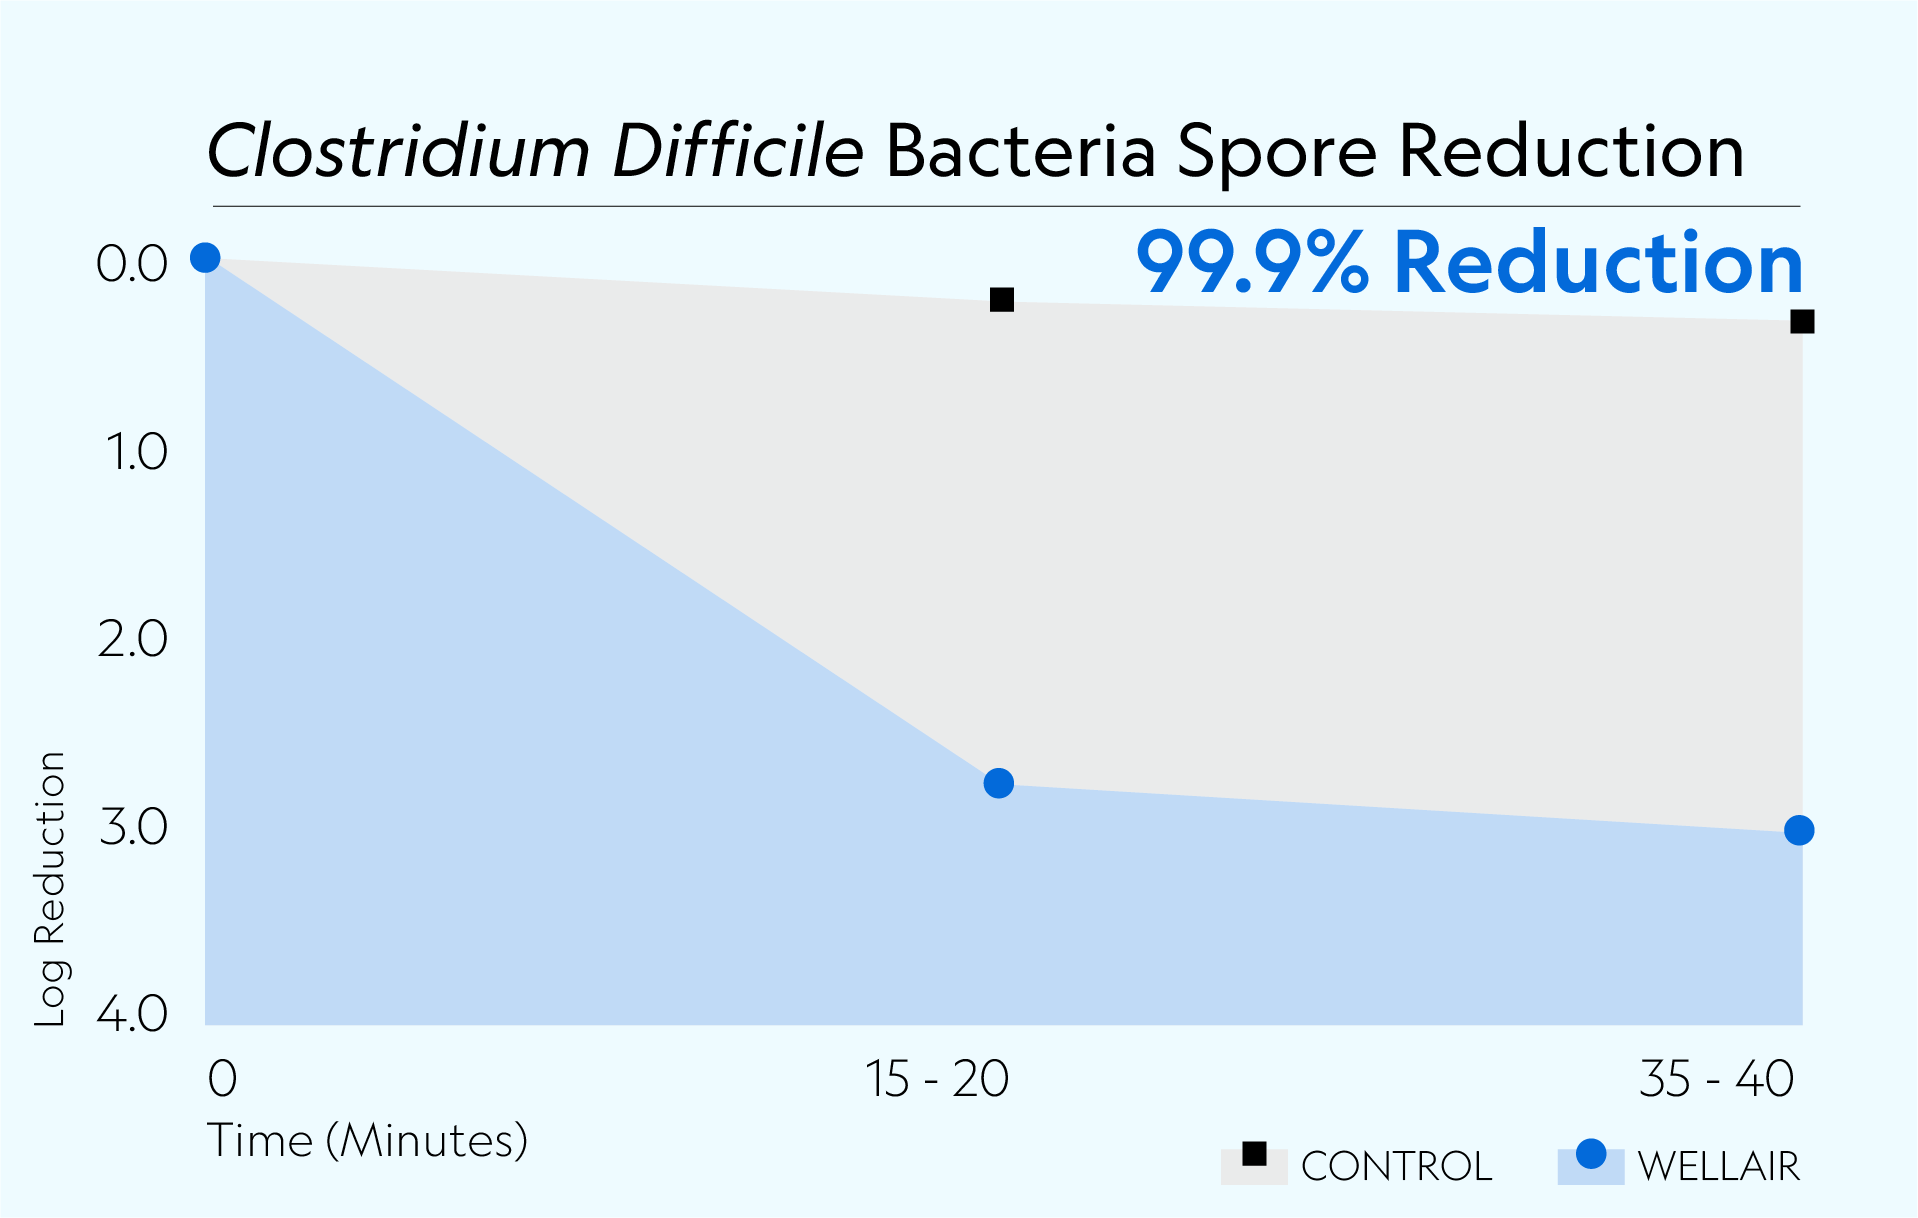 Defend 1050 achieved 99.9% reduction of Clostridium difficiile spores